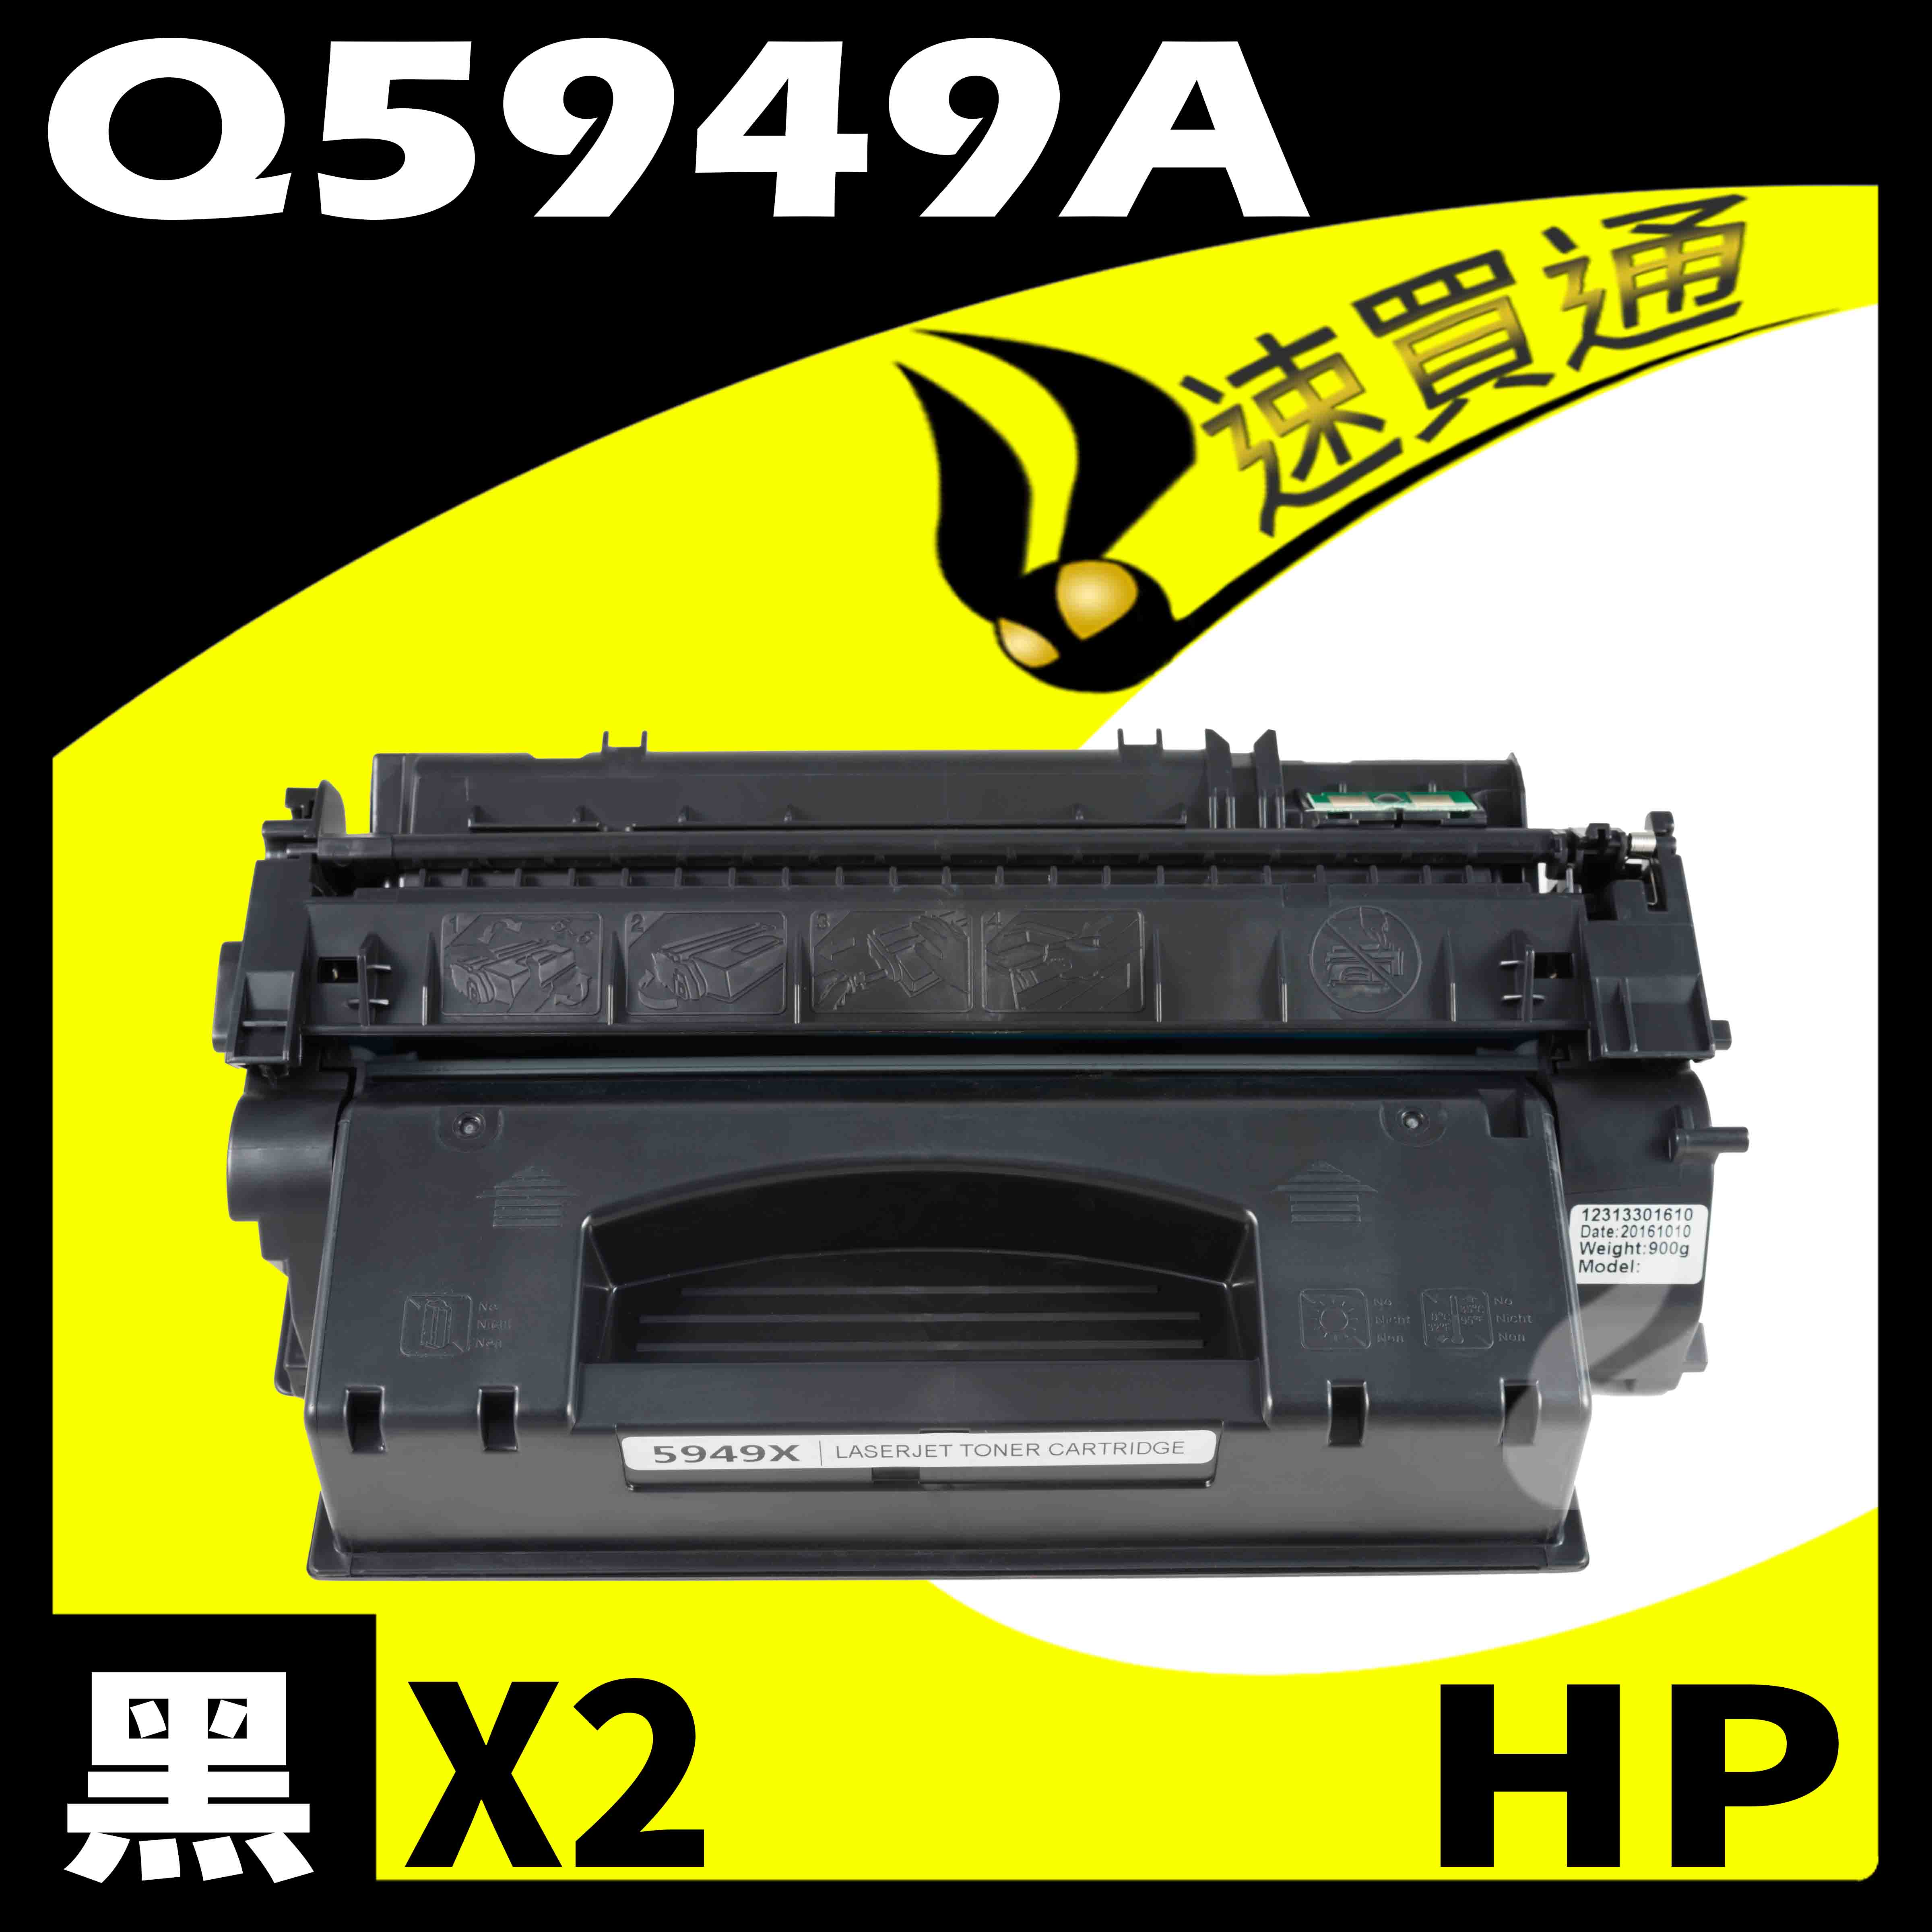 【速買通】超值2件組 HP Q5949A 相容碳粉匣